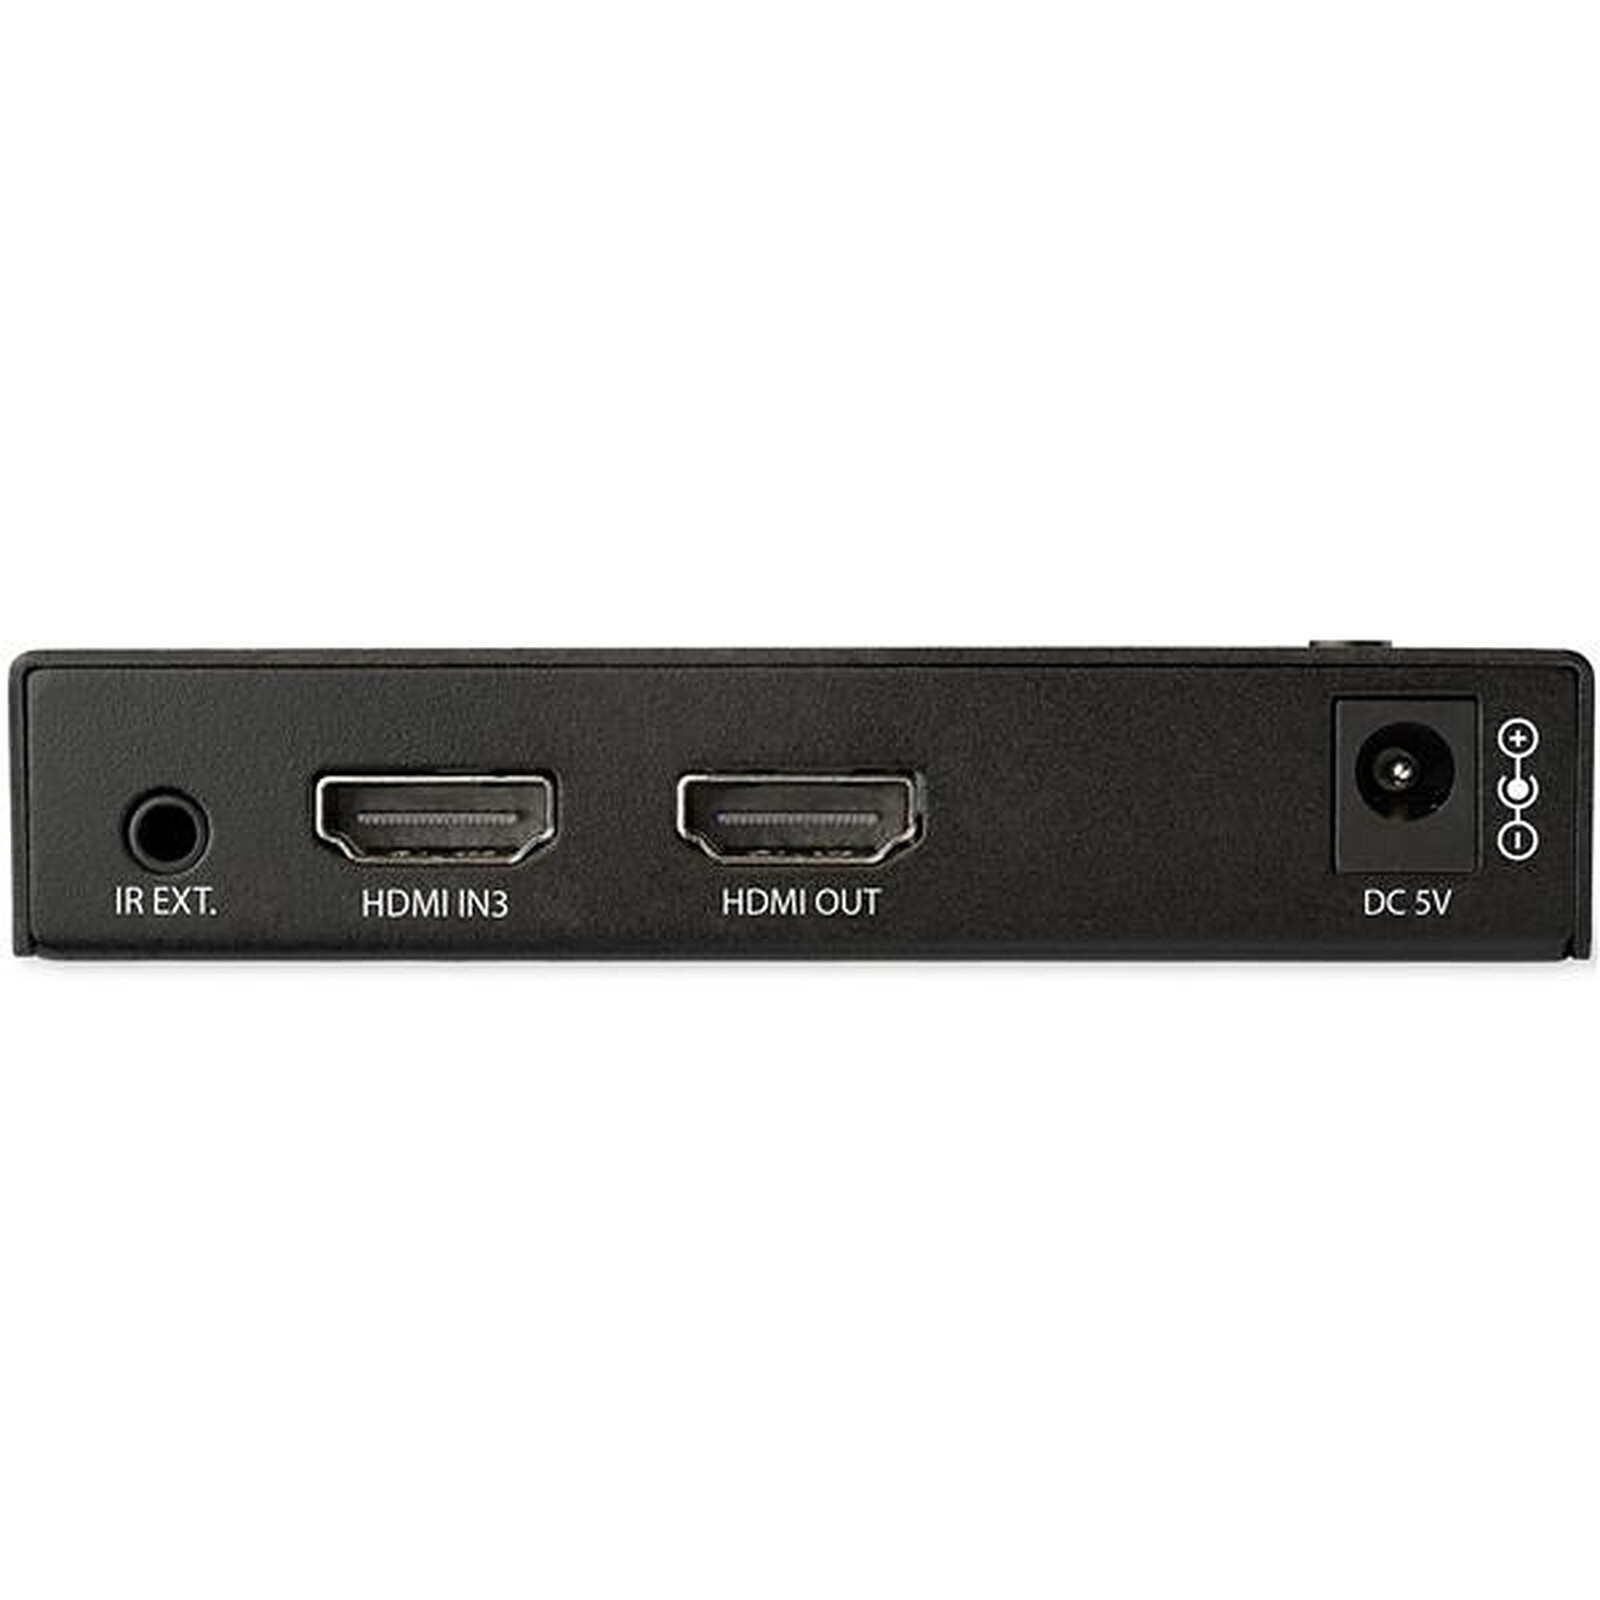 Conmutador HDMI 4K 60 Hz de StarTech.com - 3x HDMI 1x DisplayPort - HDMI -  LDLC